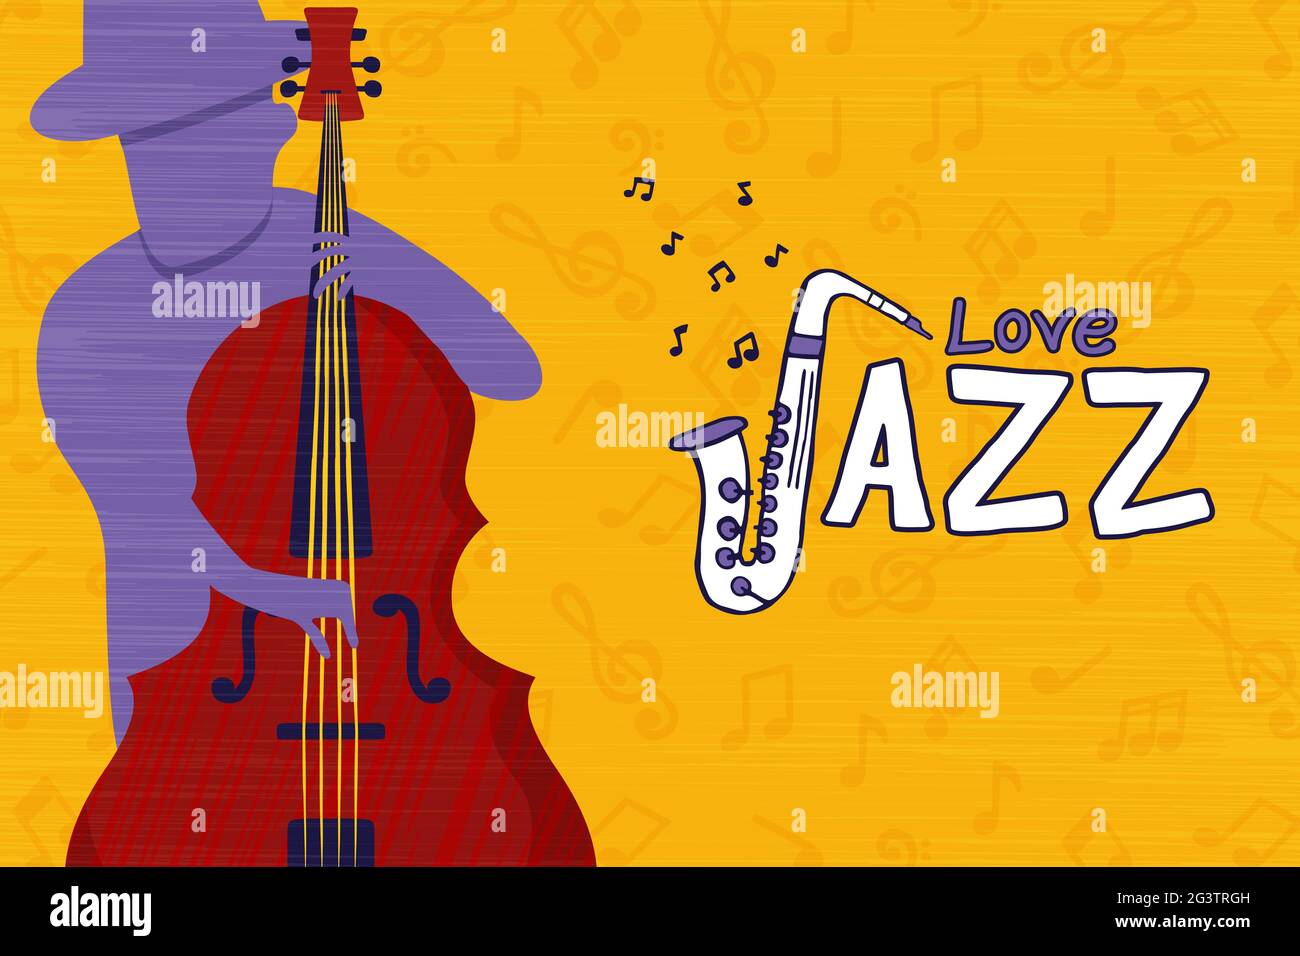 Musica jazz amore illustrazione concetto di membro del gruppo che suona violoncello strumento musicale in stile retrò cartone animato. Illustrazione Vettoriale